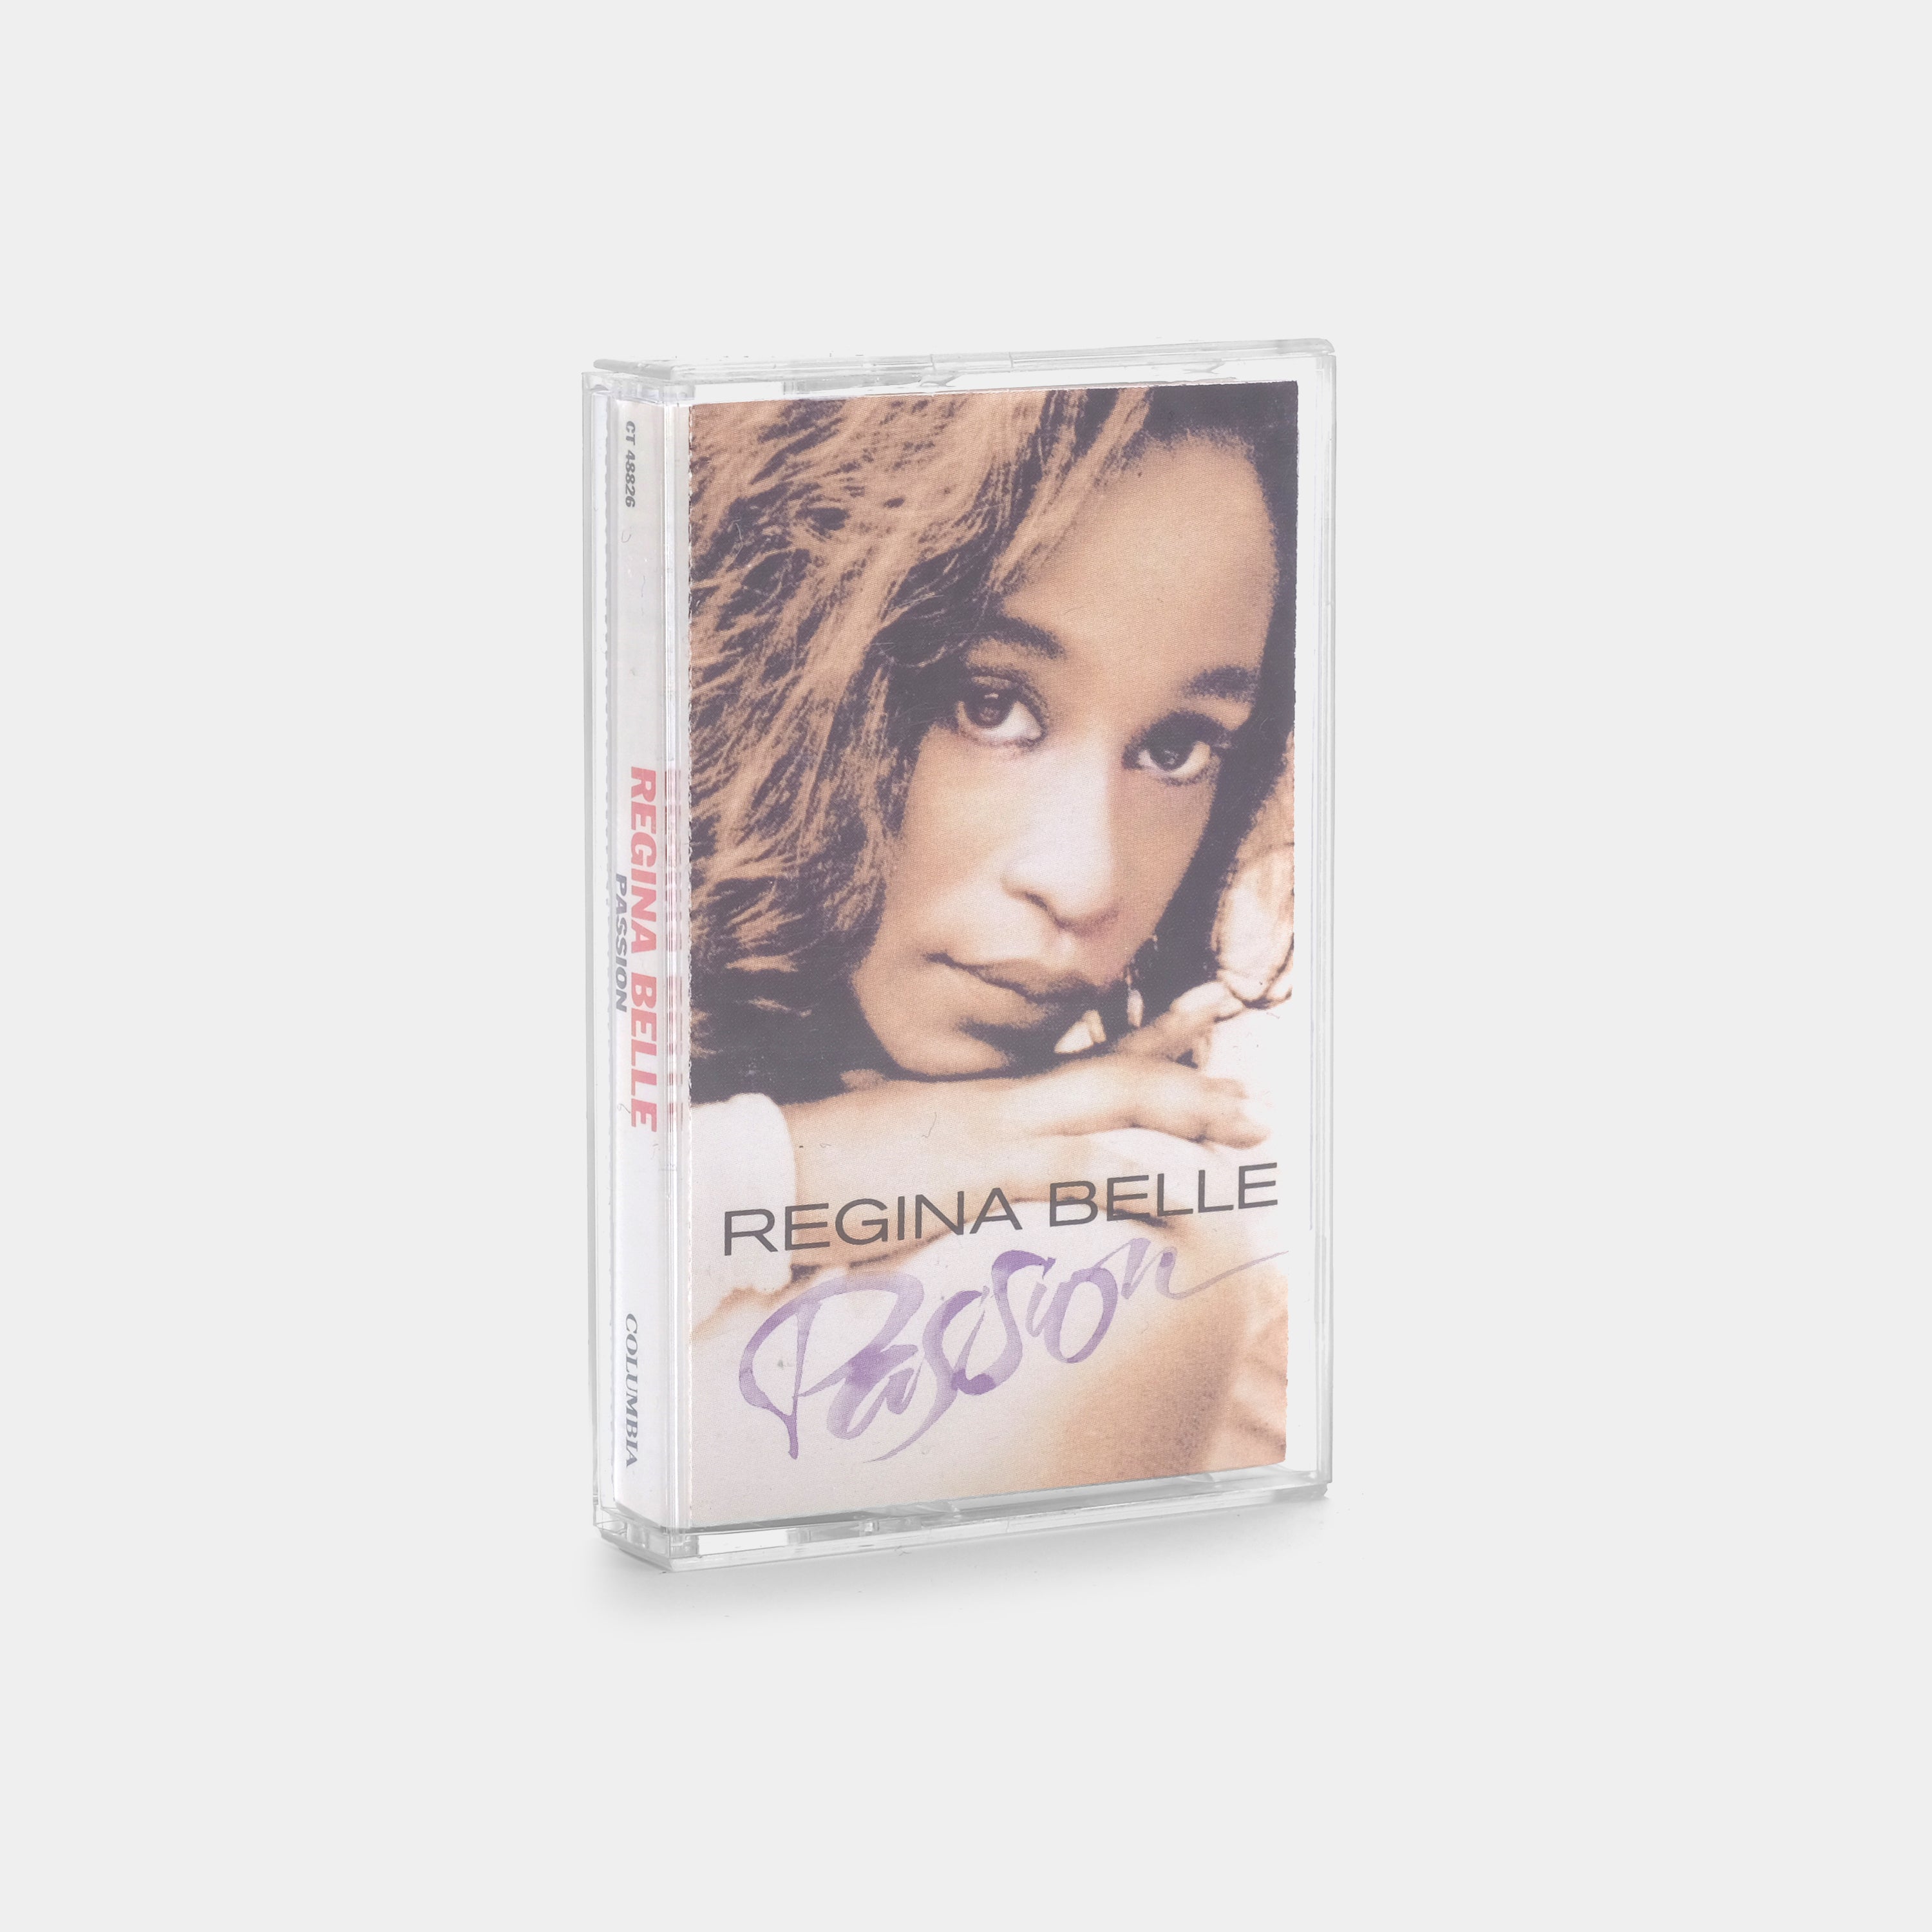 Regina Belle - Passion Cassette Tape